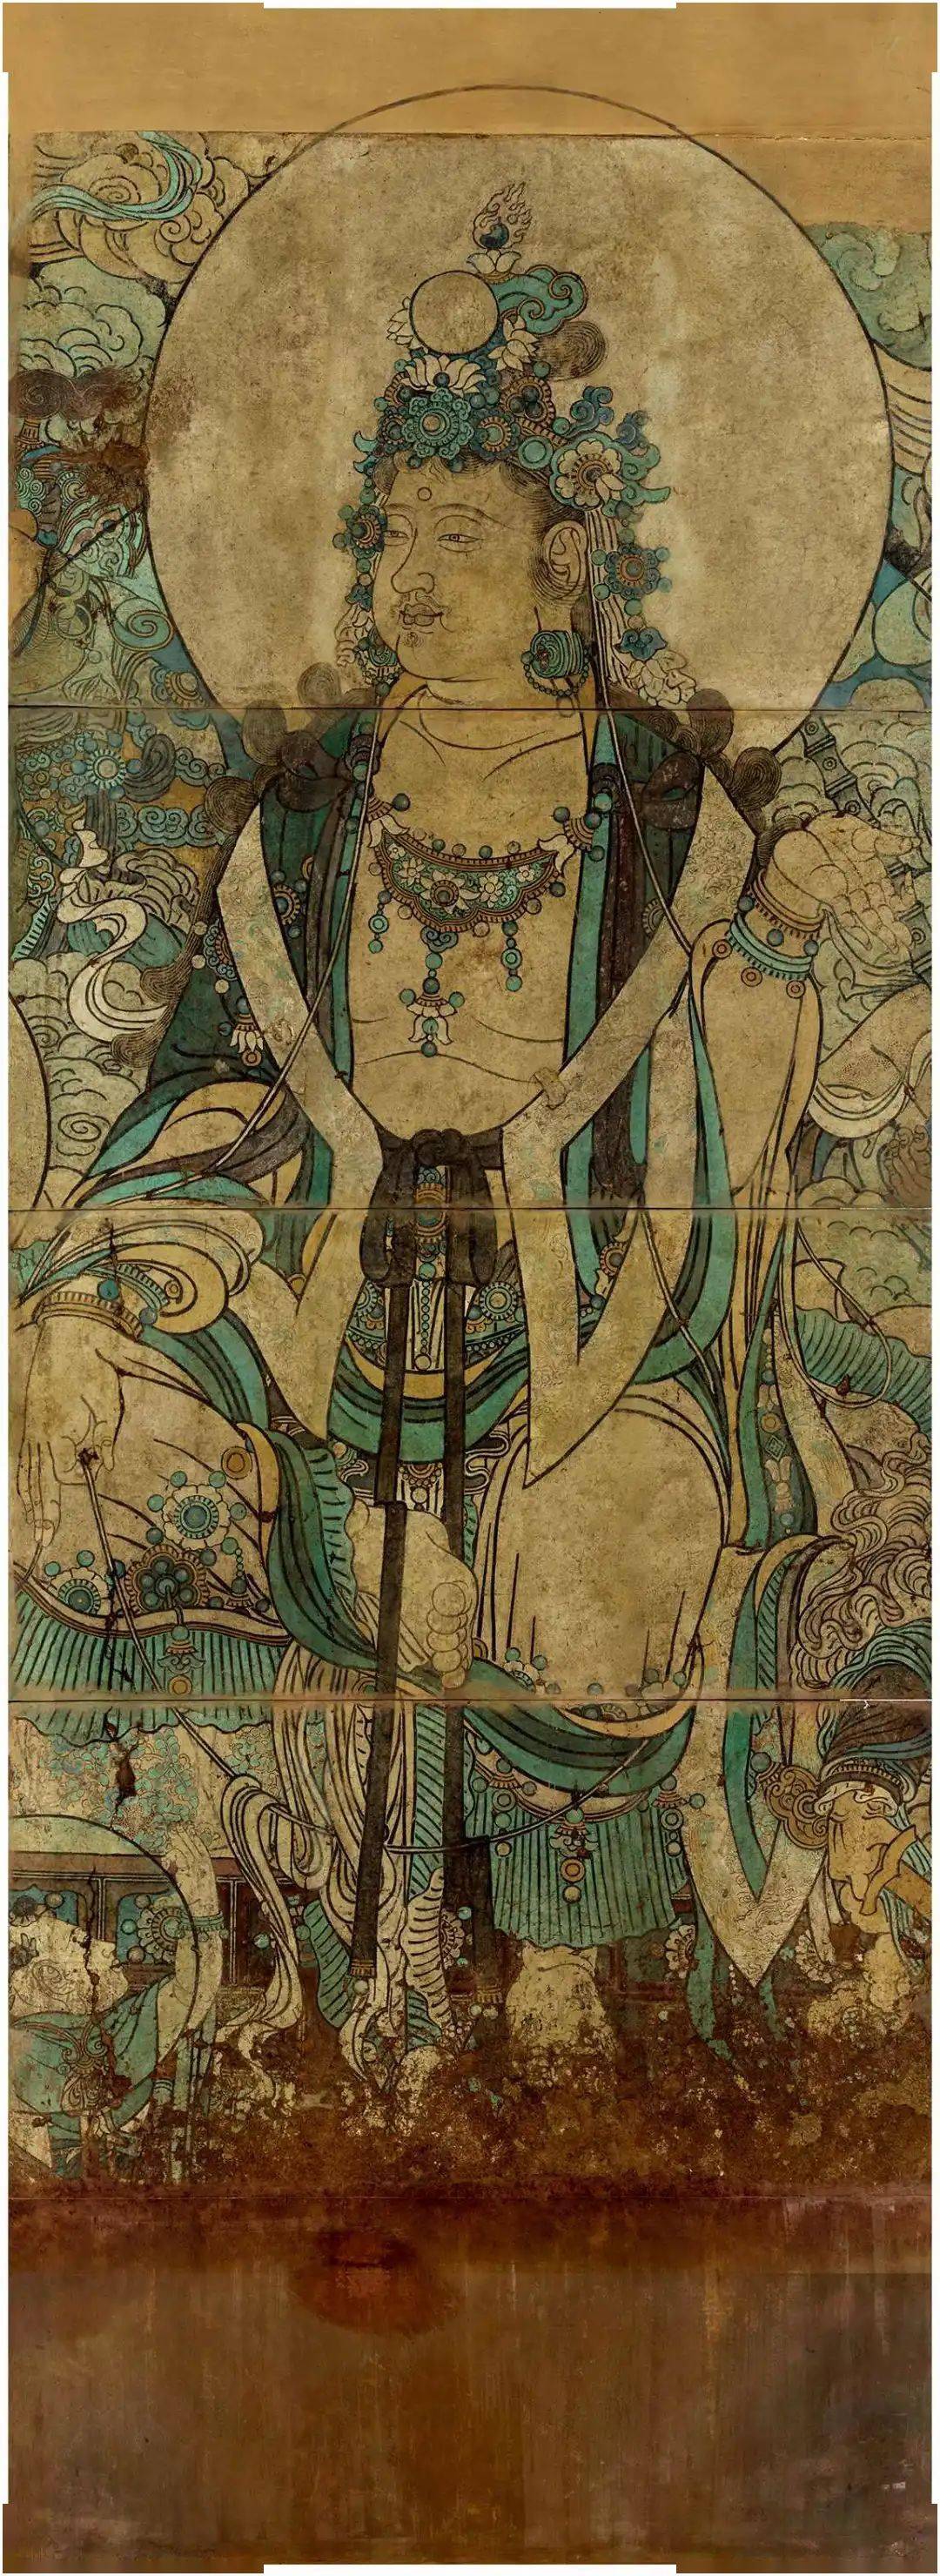 流失海外的绘画珍品宾夕法尼亚大学博物馆藏广胜寺壁画